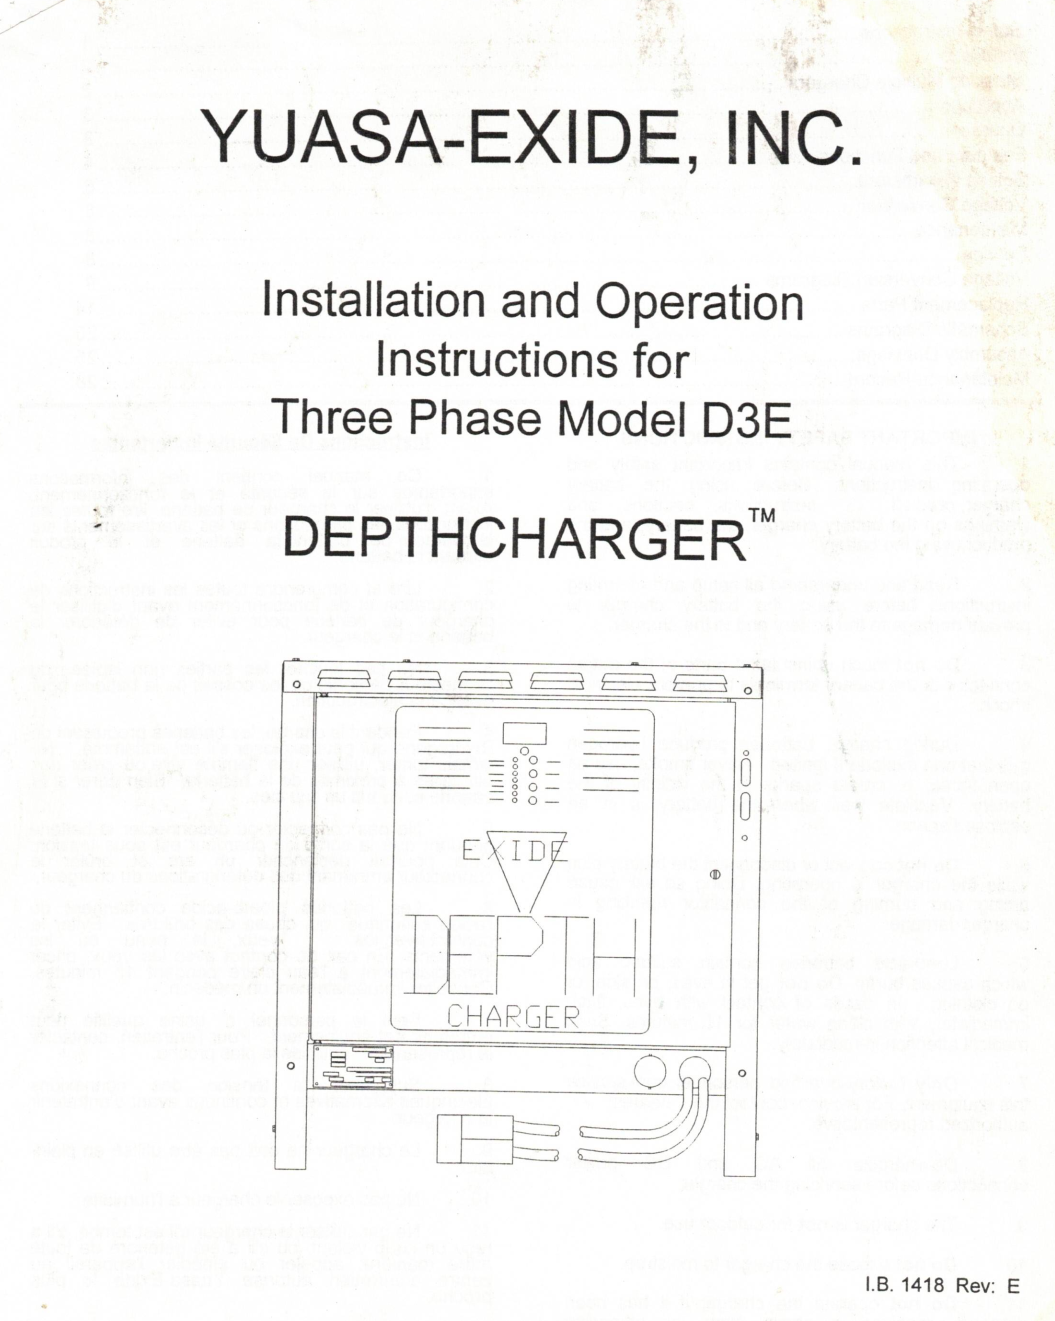 Exide DepthCharger D3E PDF Manual